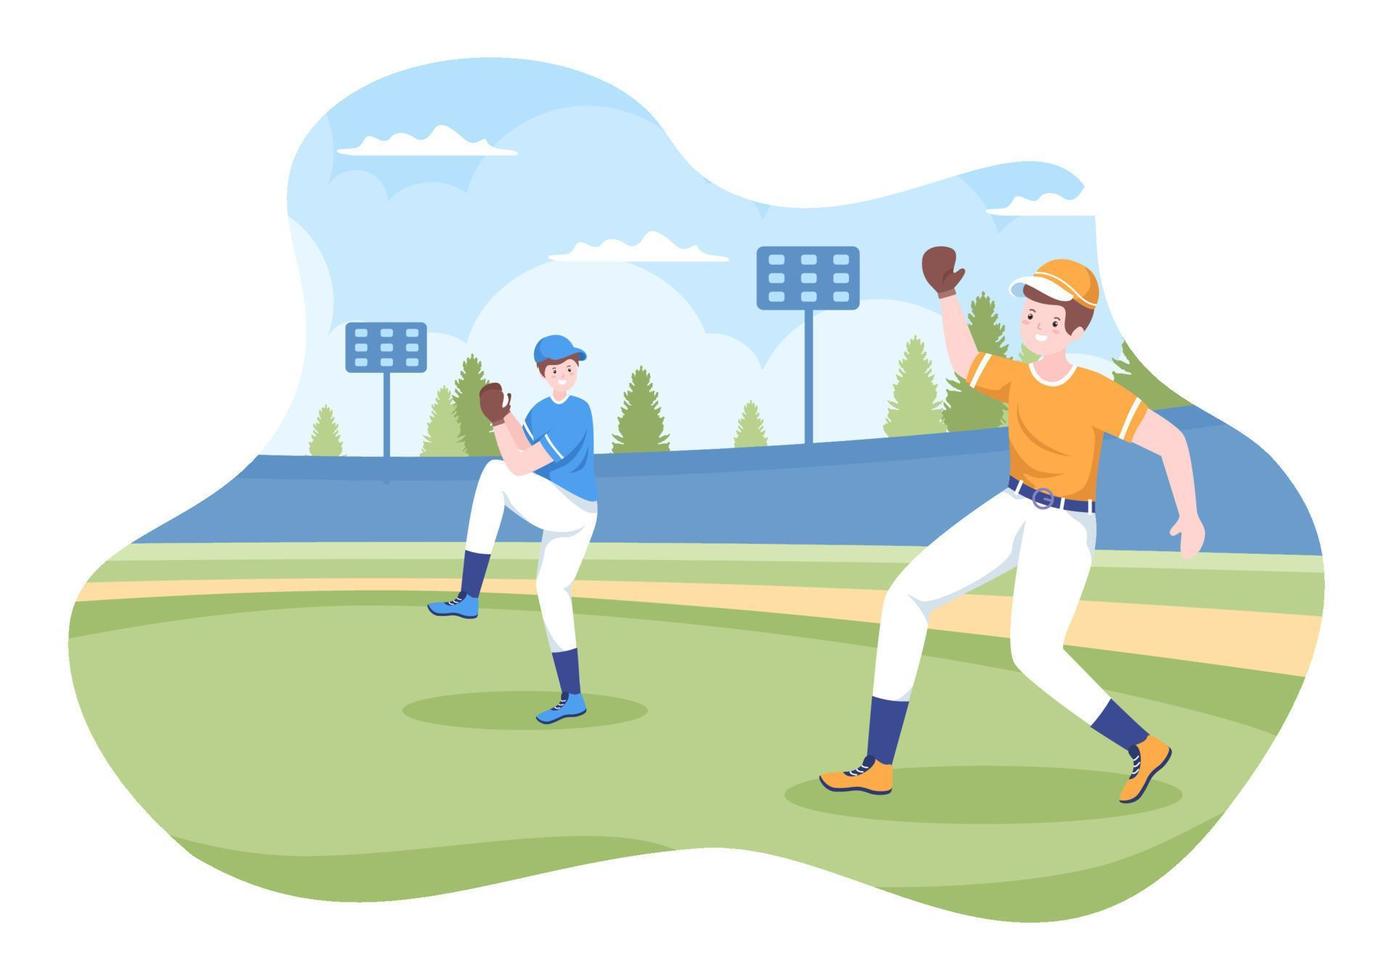 honkbalspeler sporten gooien, vangen of slaan van een bal met vleermuizen en handschoenen dragen uniform op rechtbank stadion in platte cartoon afbeelding vector